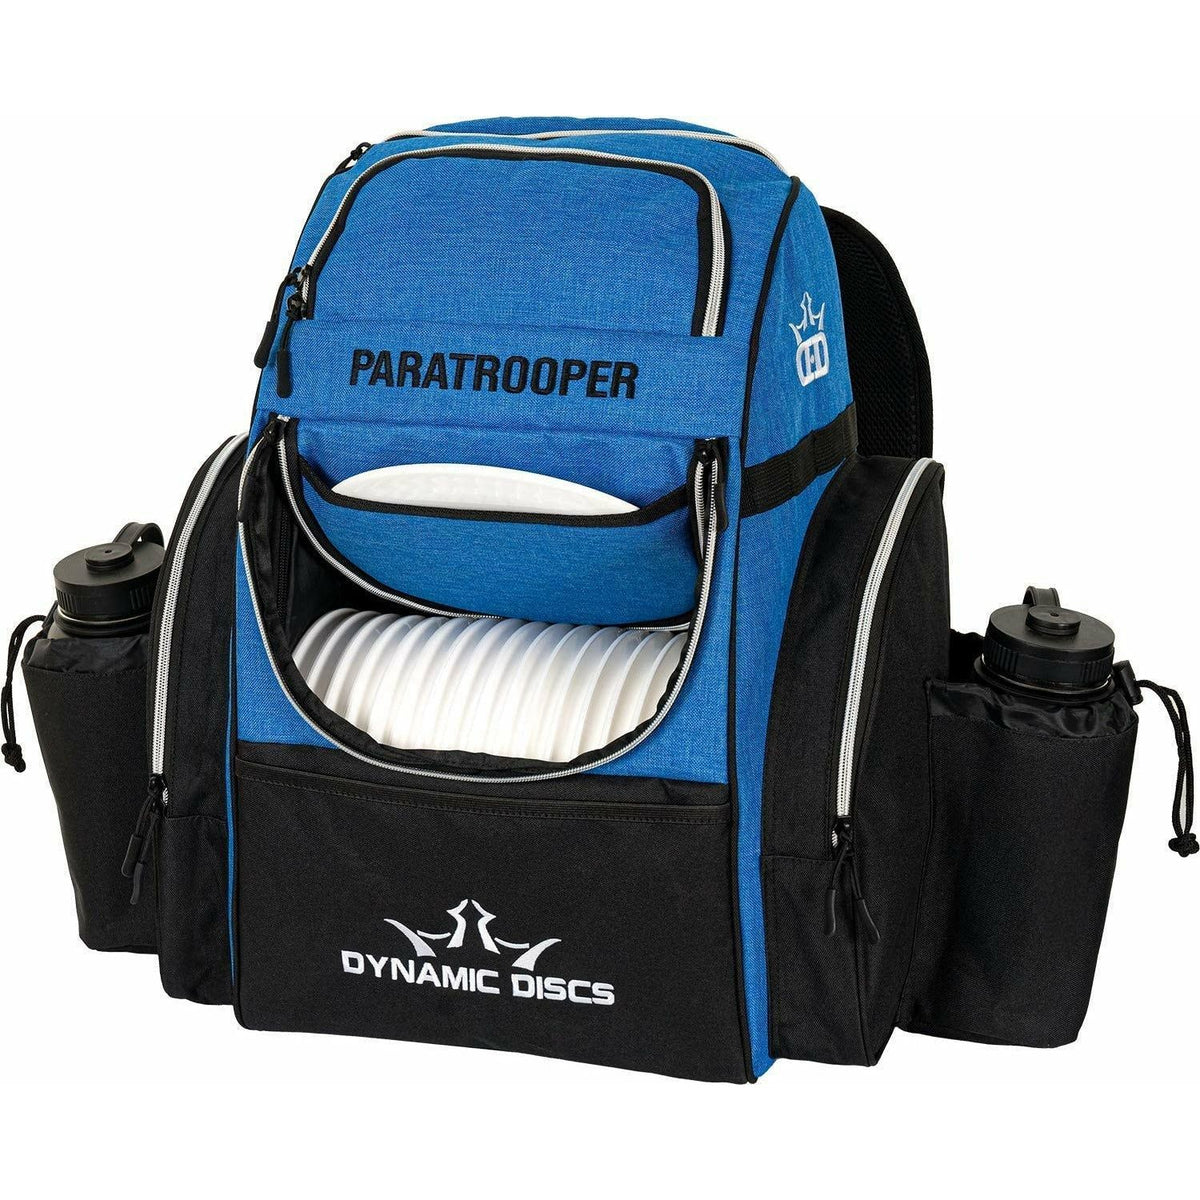 Dynamic Discs Paratrooper Backpack Bag